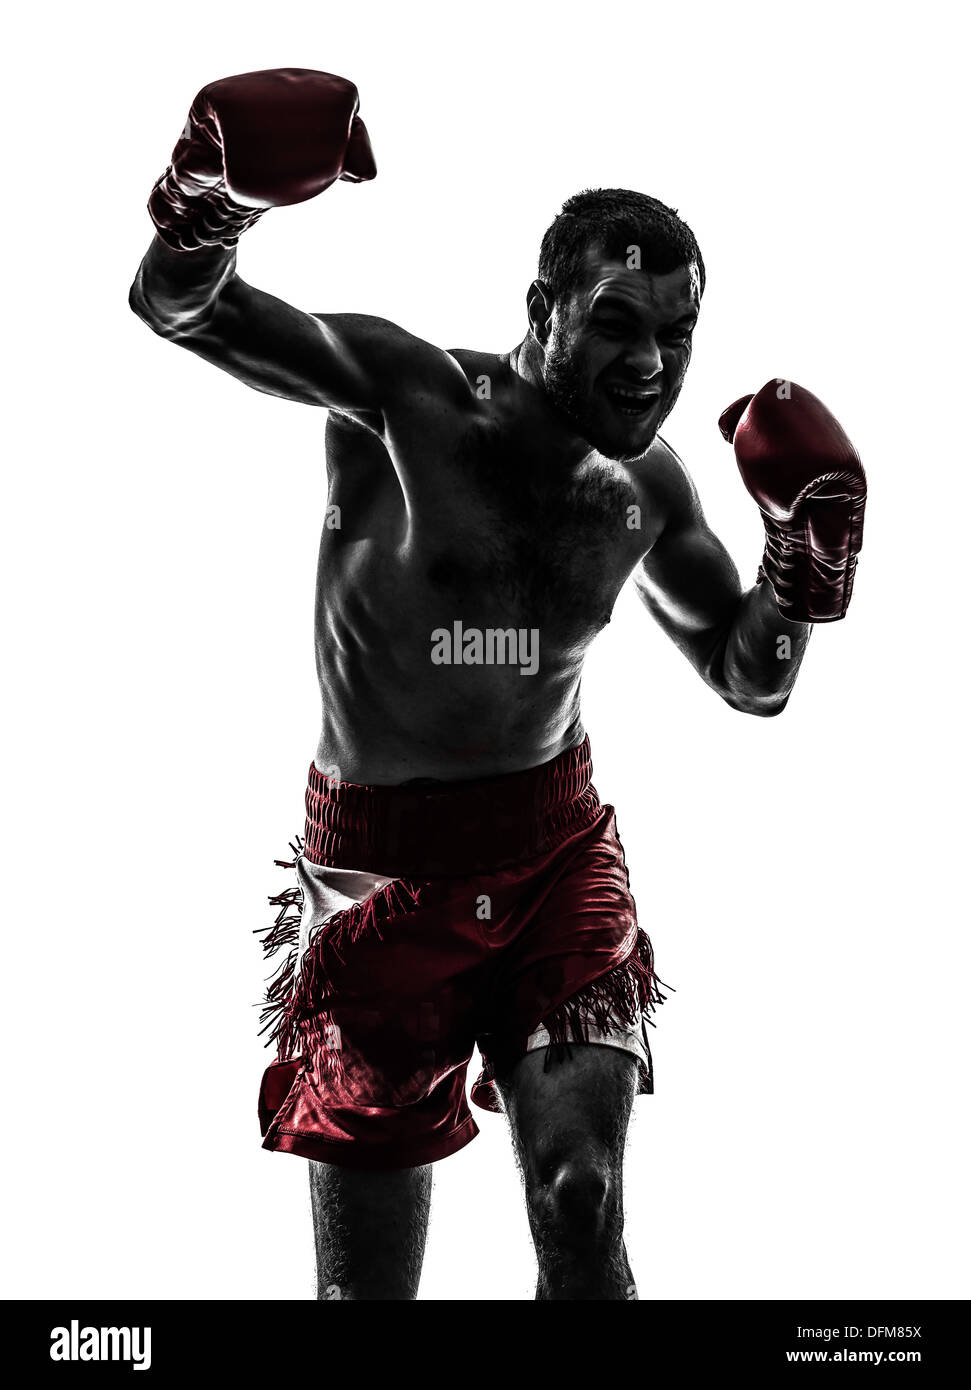 Un homme l'exercice de la boxe en silhouette studio sur fond blanc Banque D'Images